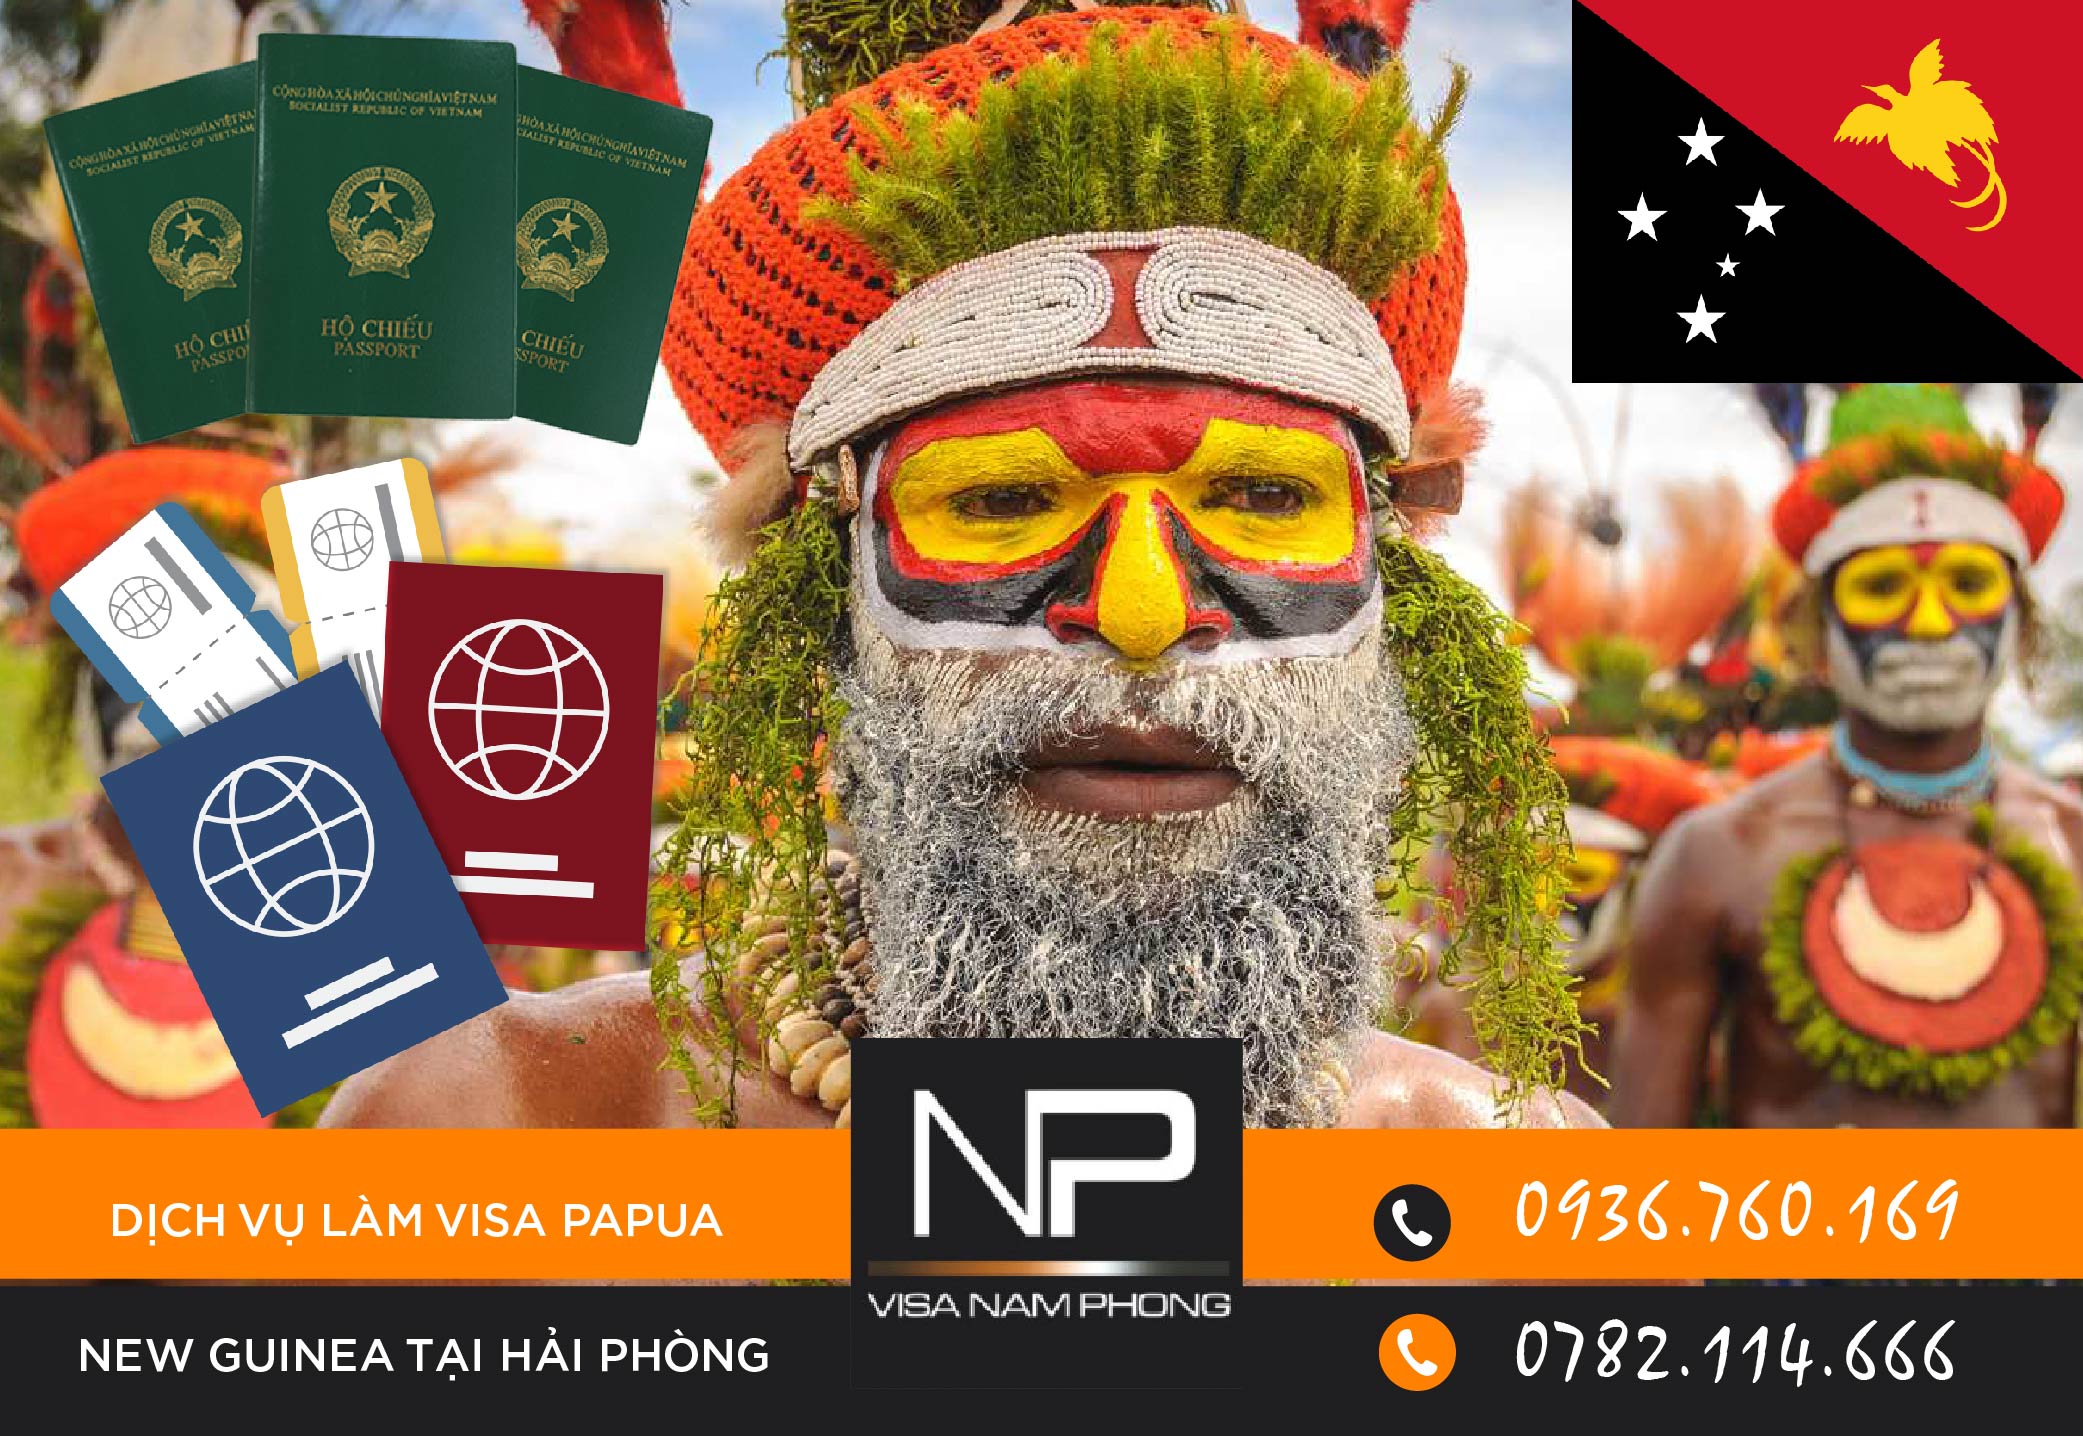 Dịch vụ làm visa Papua New Guinea tại Hải Phòng